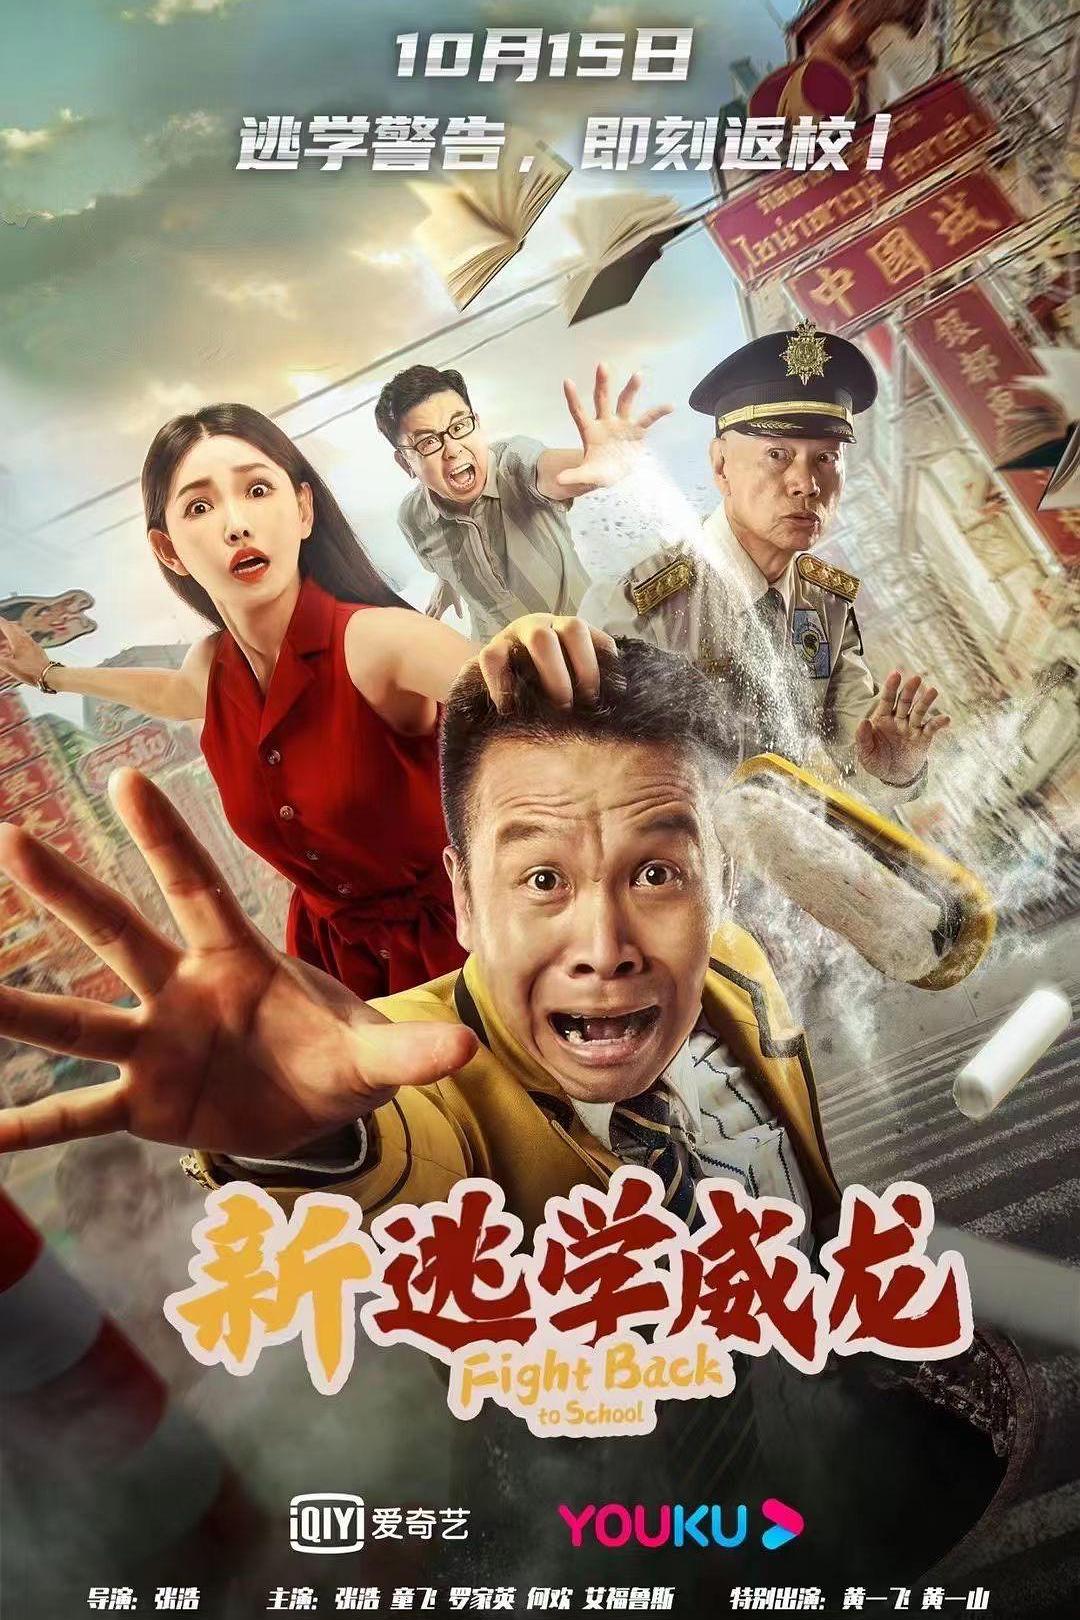 2021年张浩、黄一山喜剧片《新逃学威龙》1080P国语中字